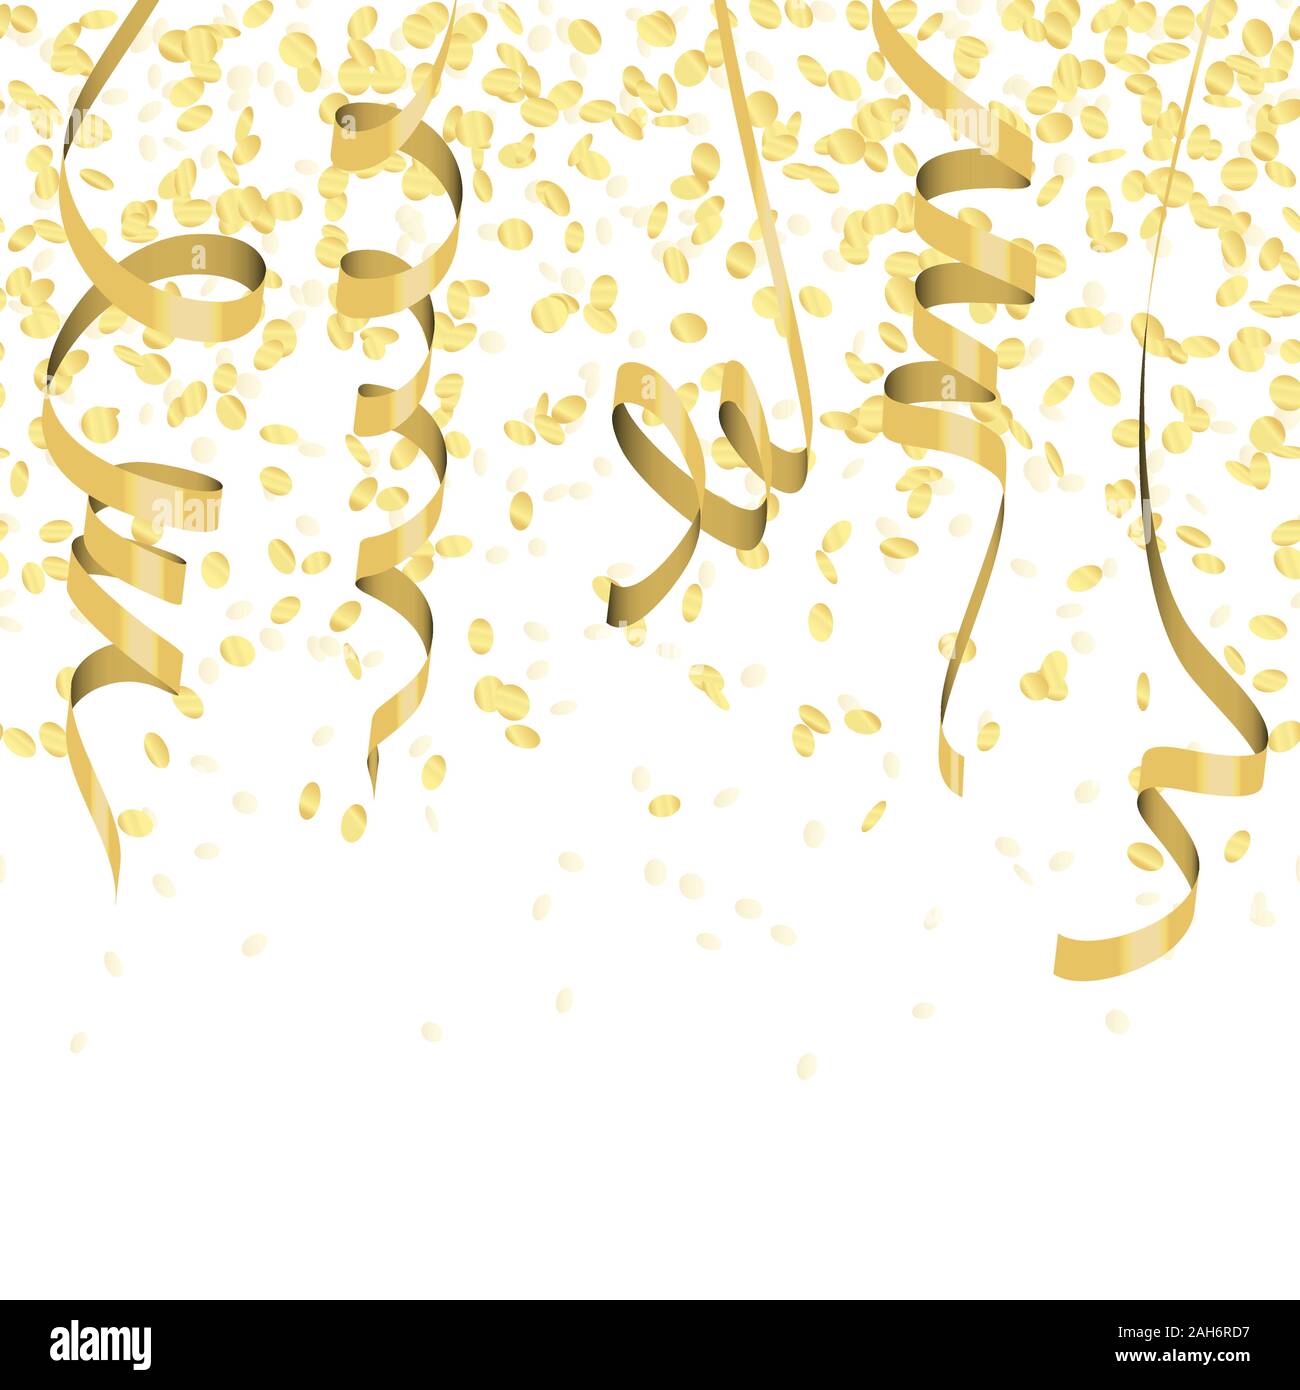 Vector Illustration De La Célébration D'anniversaire Avec Des Confettis  Colorés Clip Art Libres De Droits, Svg, Vecteurs Et Illustration. Image  27449369